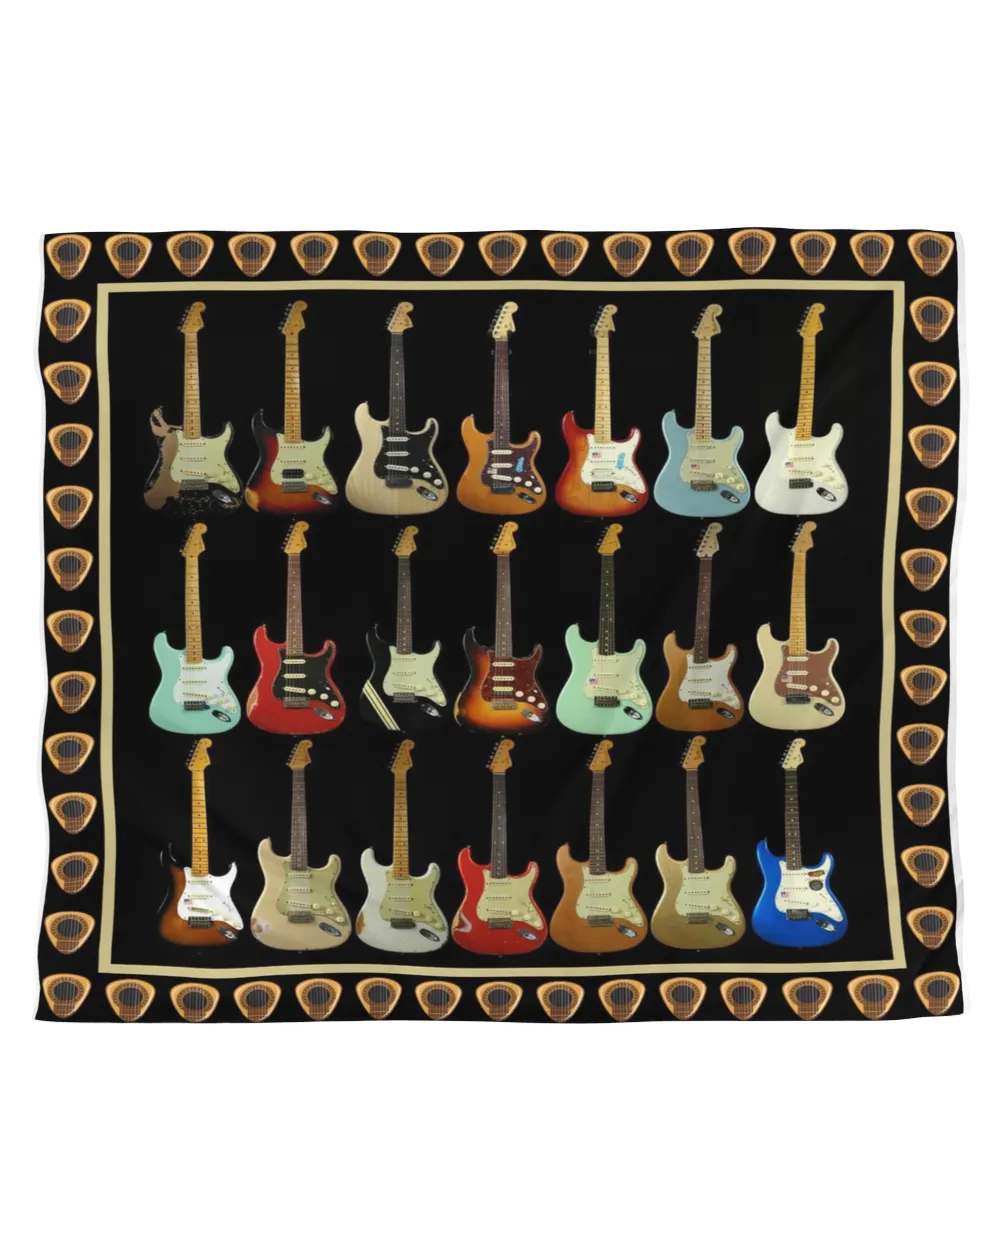 Guitar Stratocaster